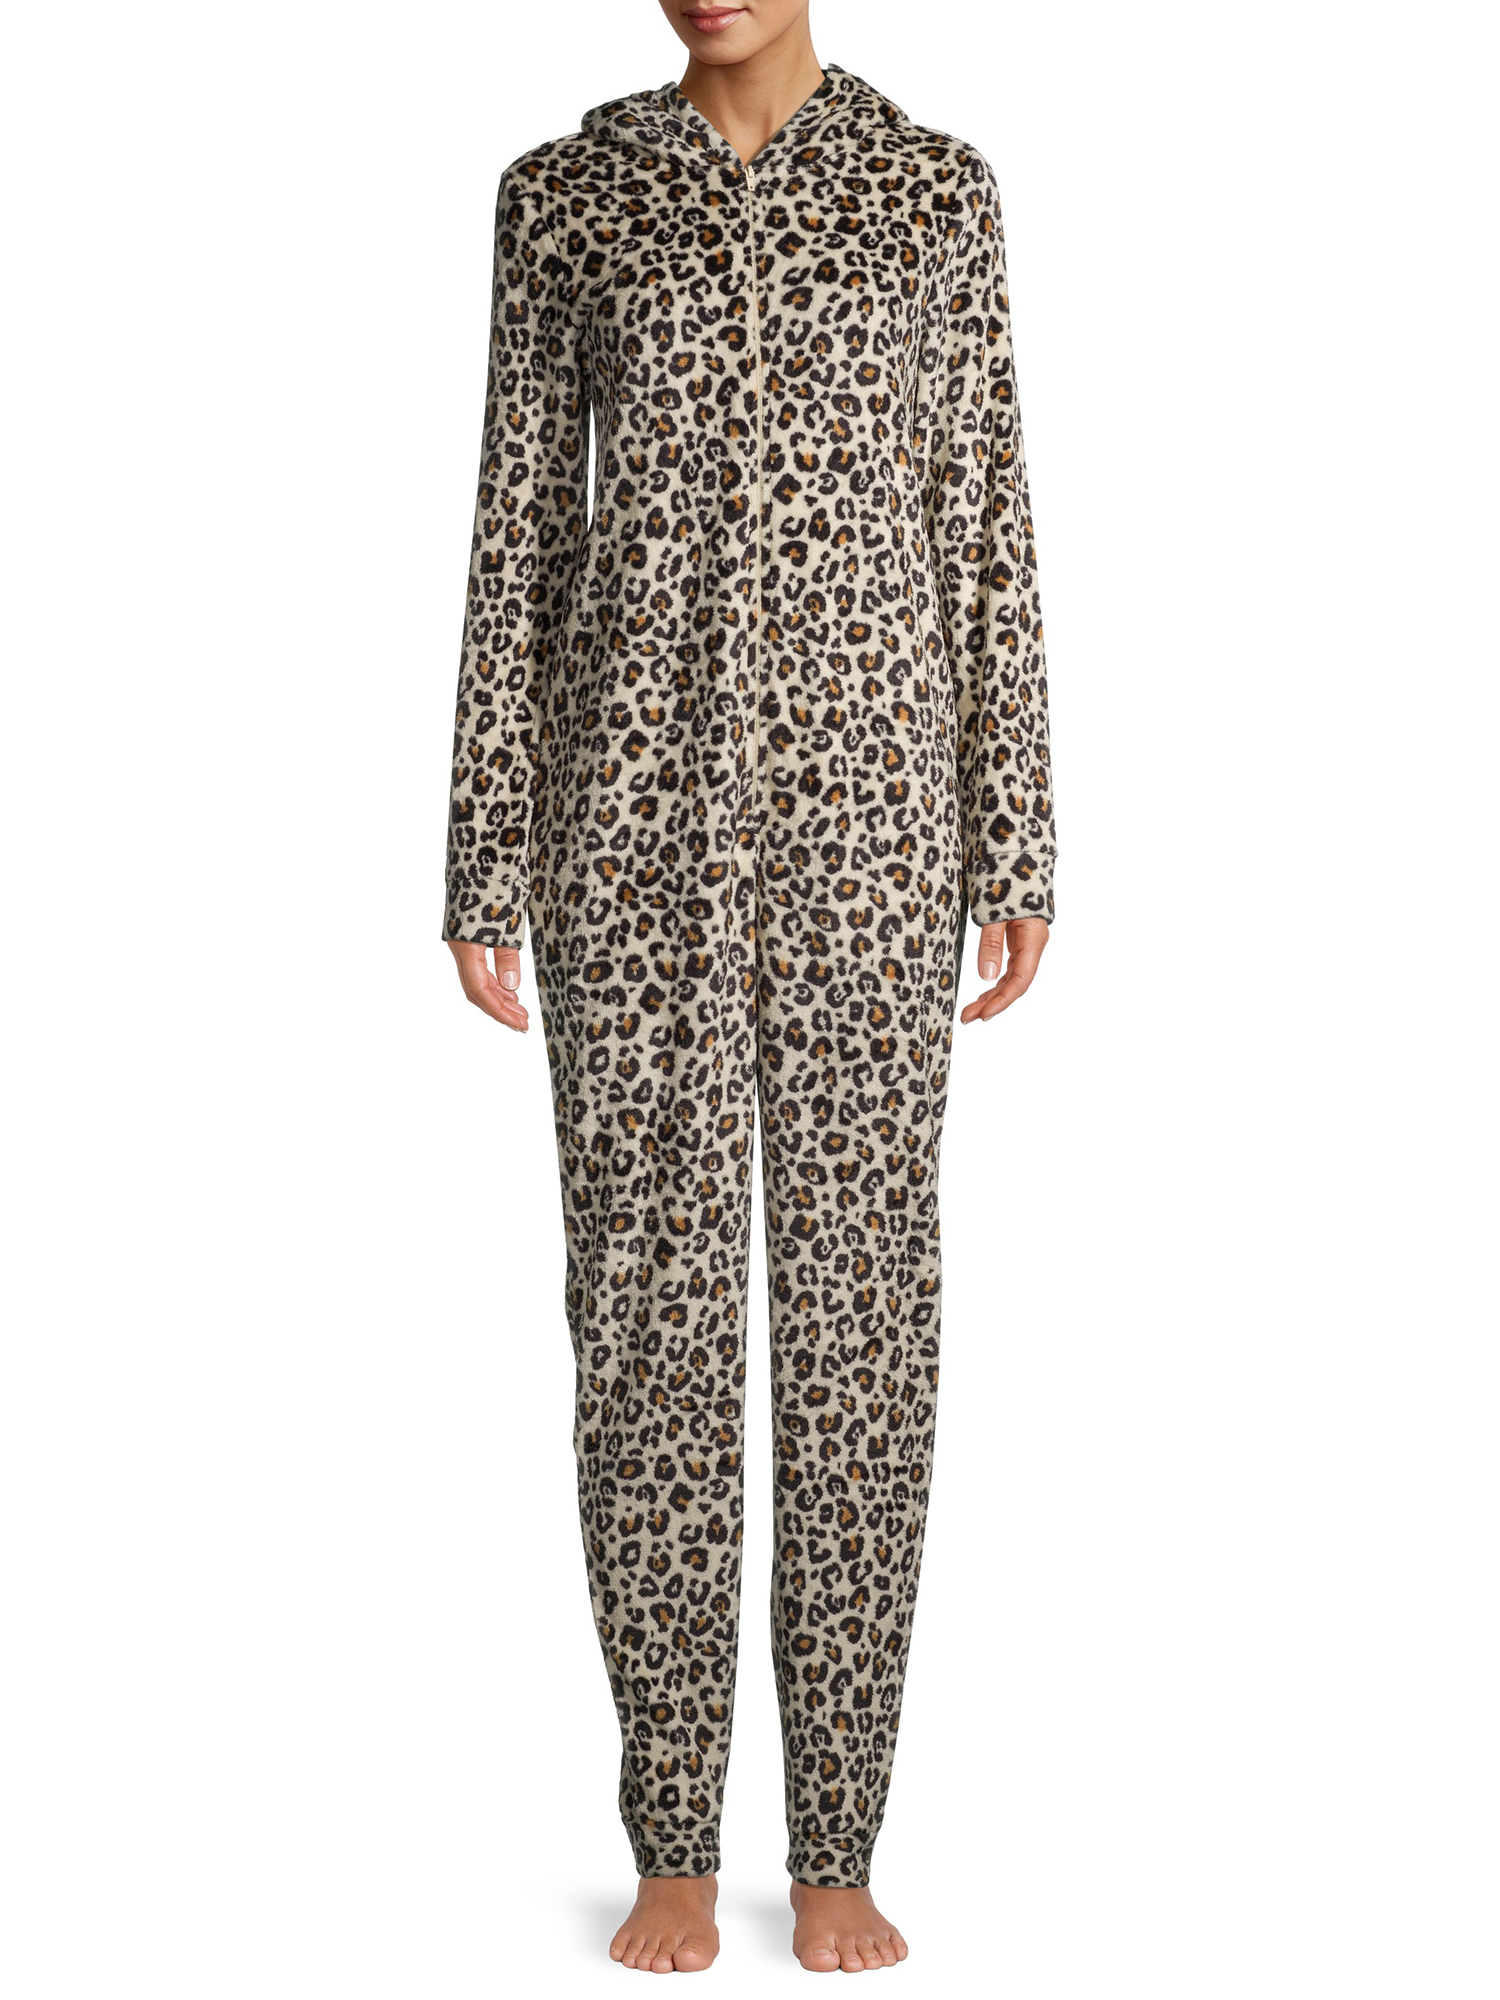 George Women's Leopard Print Union Suit - image 6 of 6